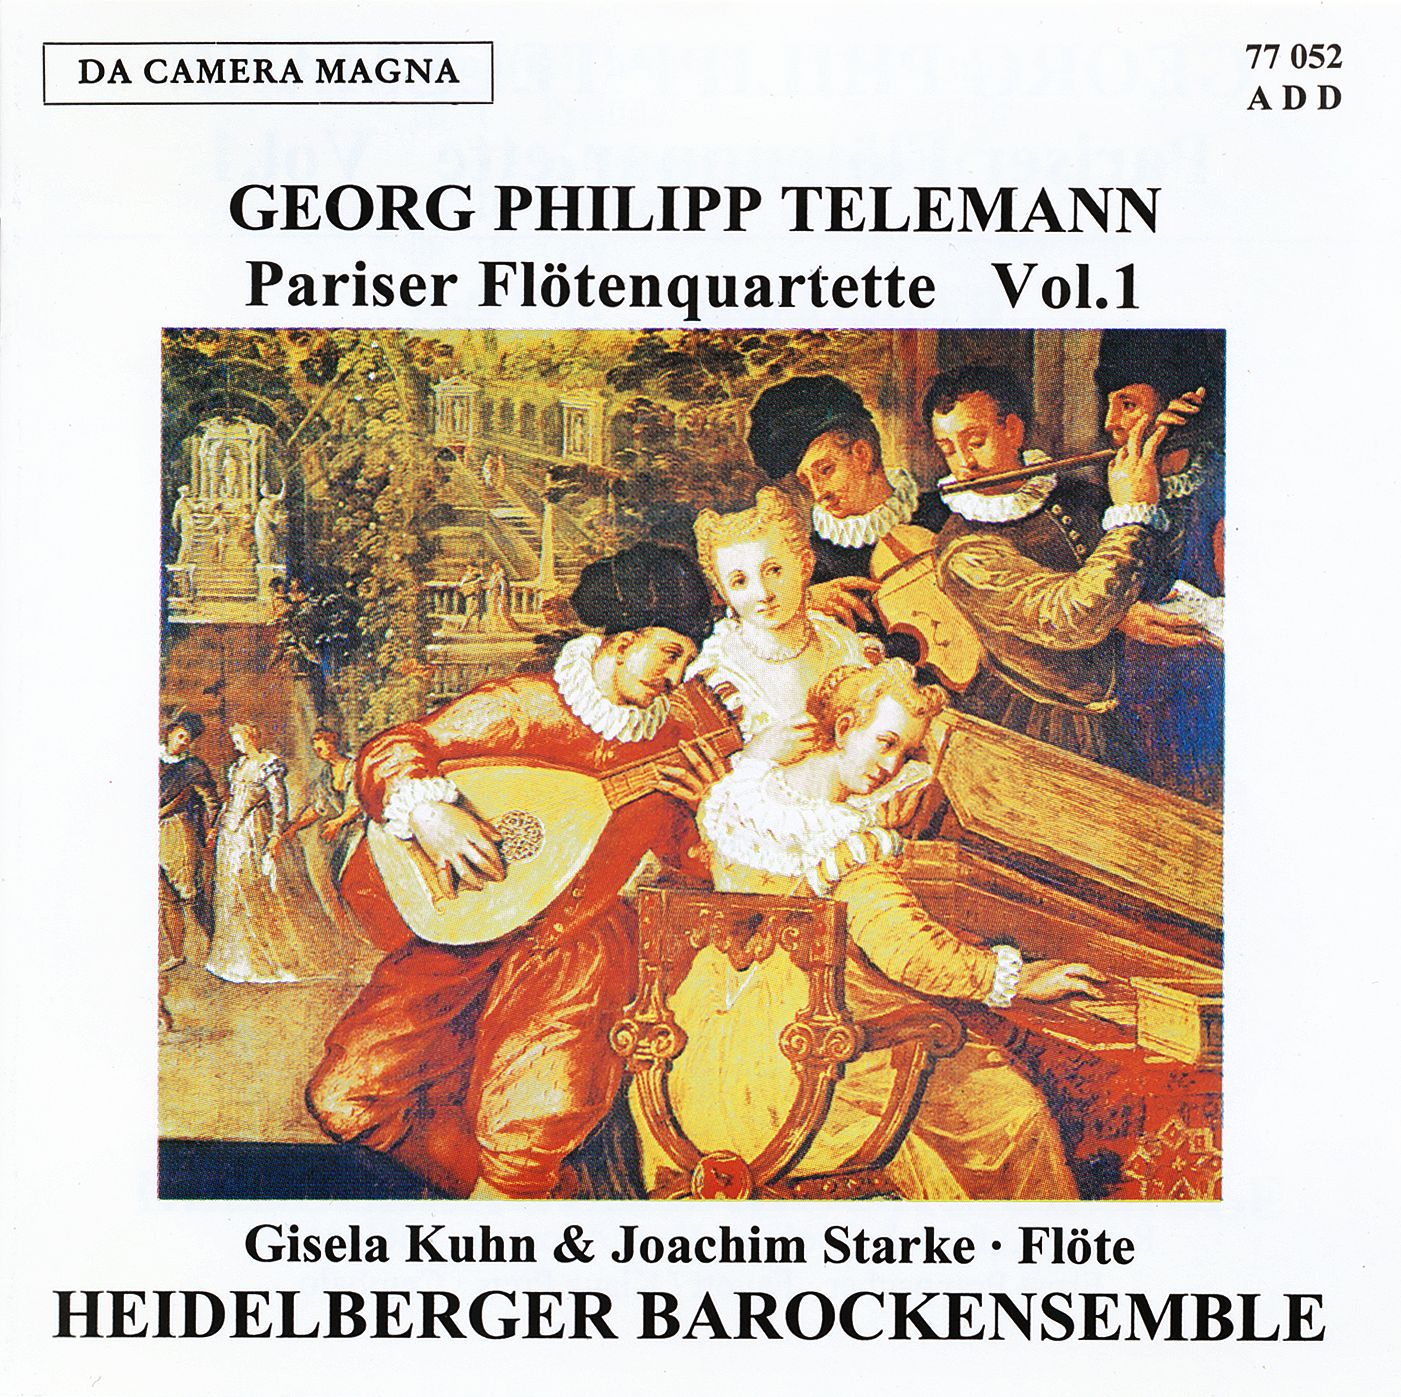 Georg Philipp Telemann - Pariser Flötenquartette Vol. 1